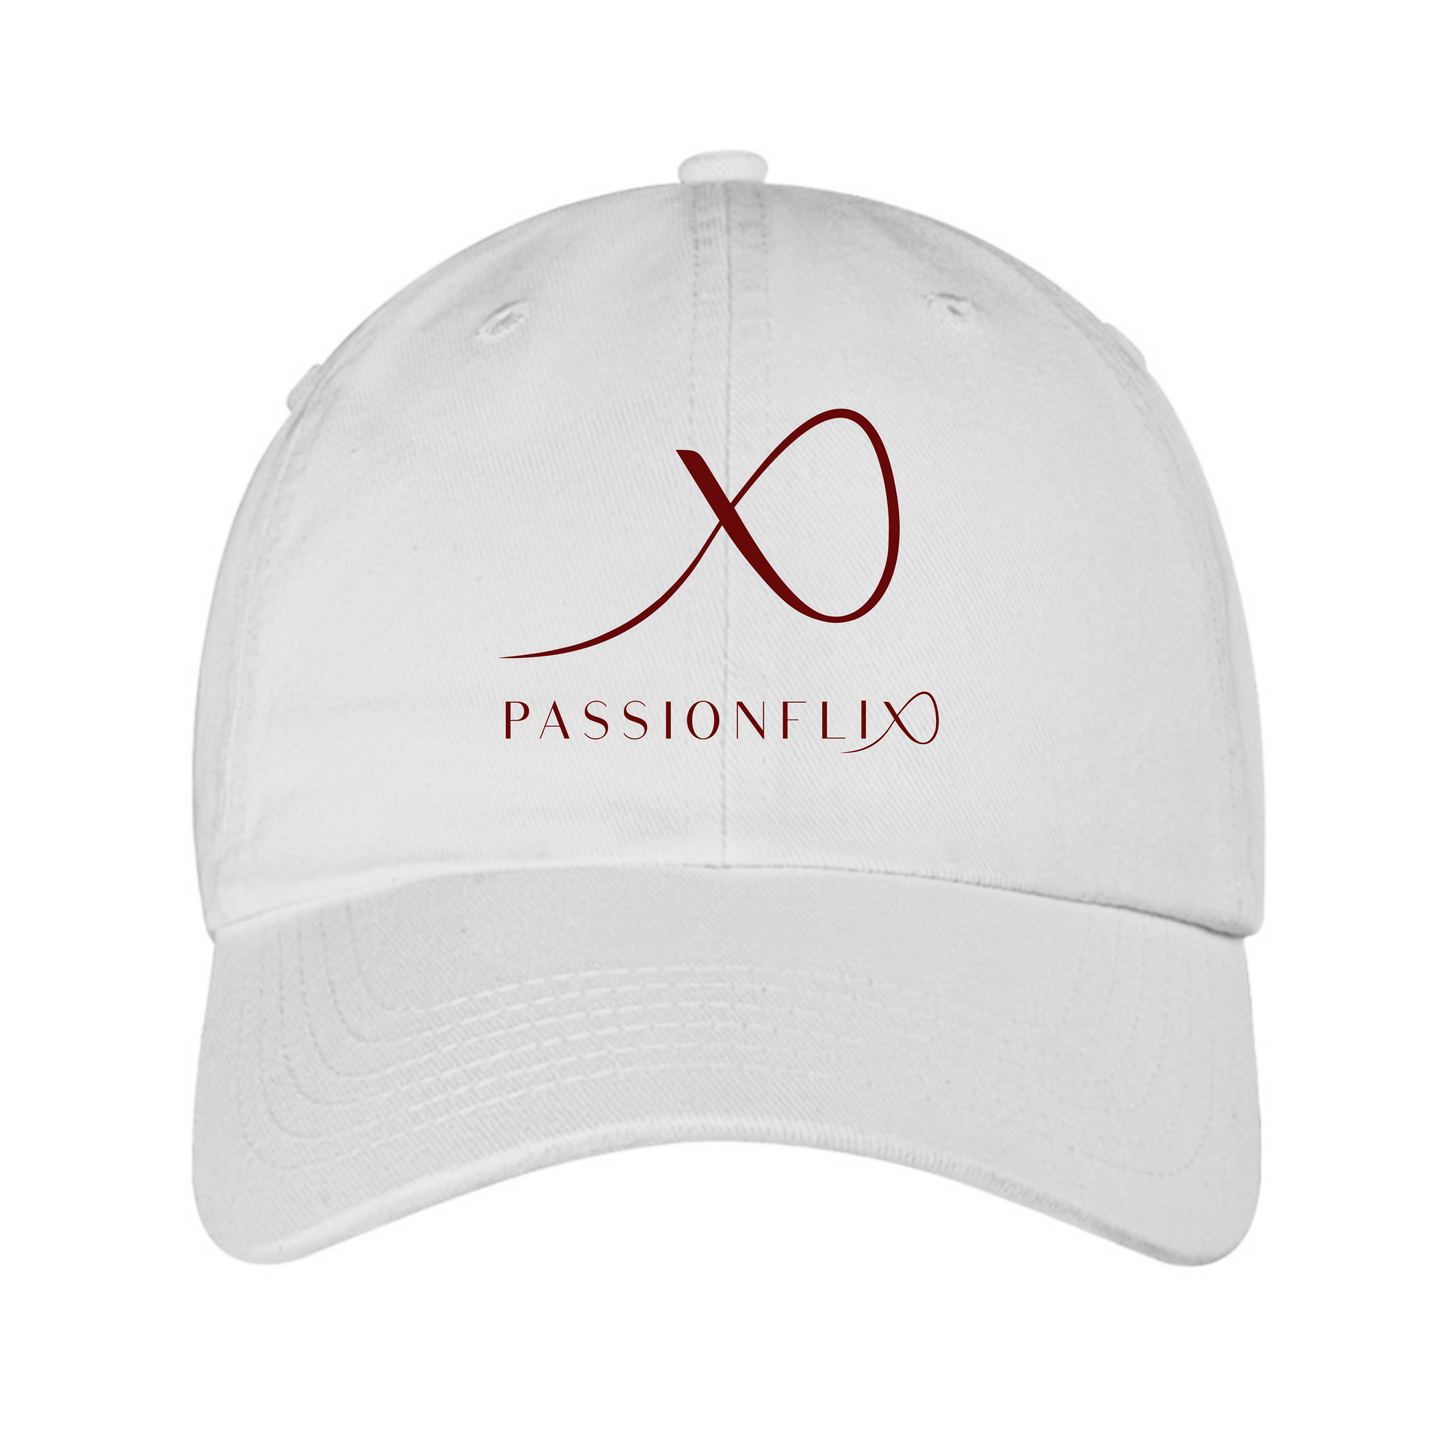 Passionate XO Cap